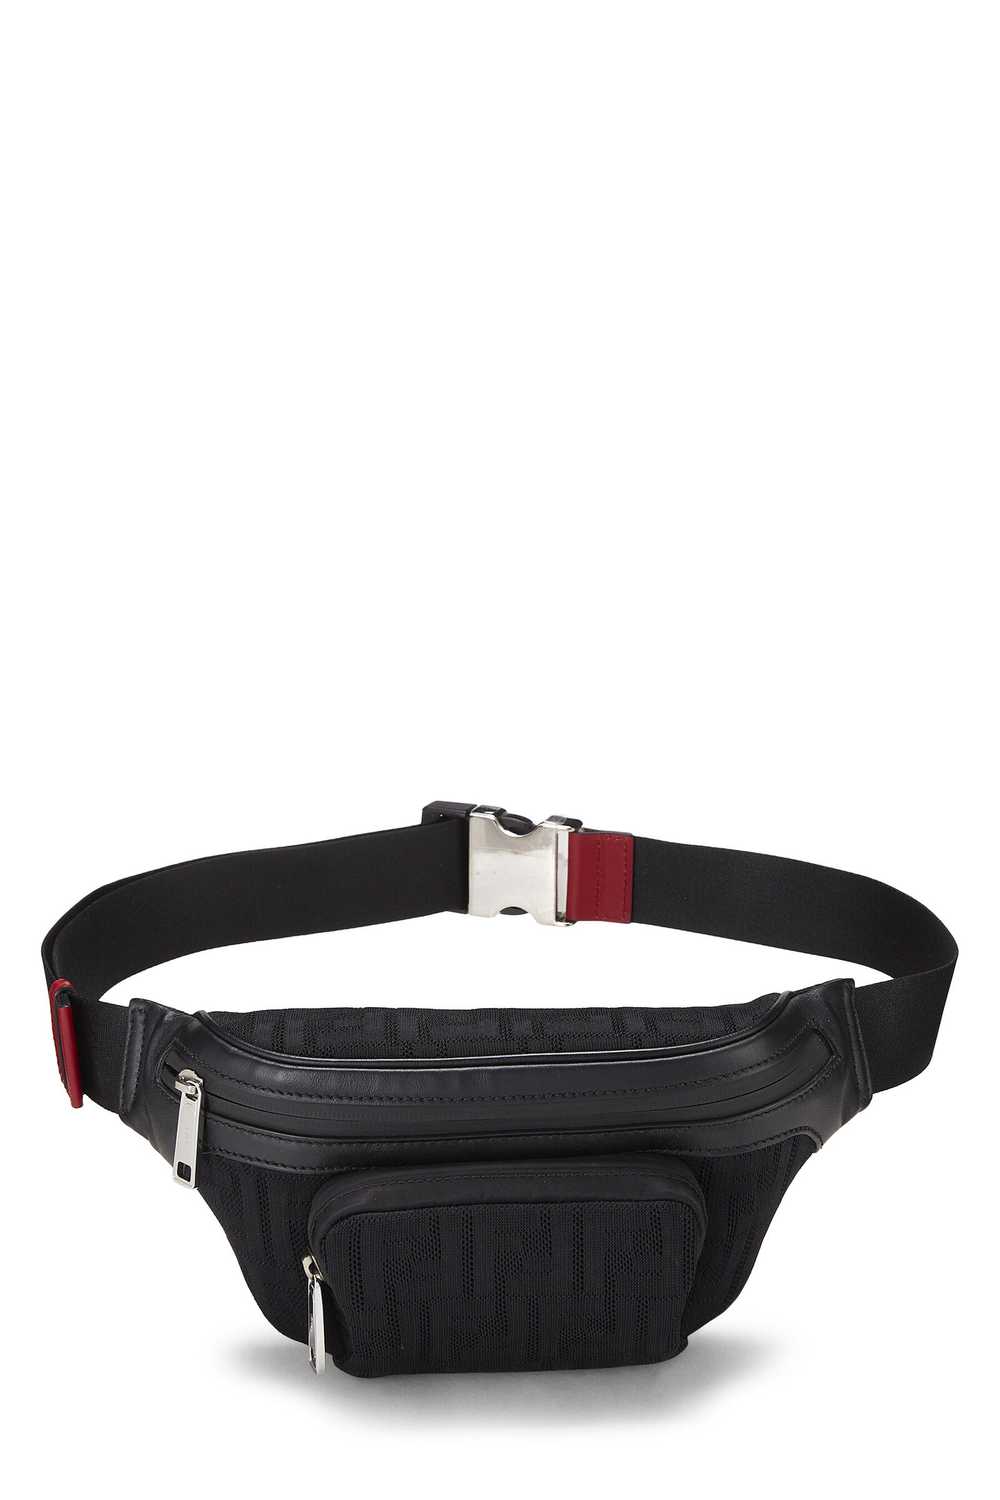 Black Mesh Zucca Belt Bag - image 1